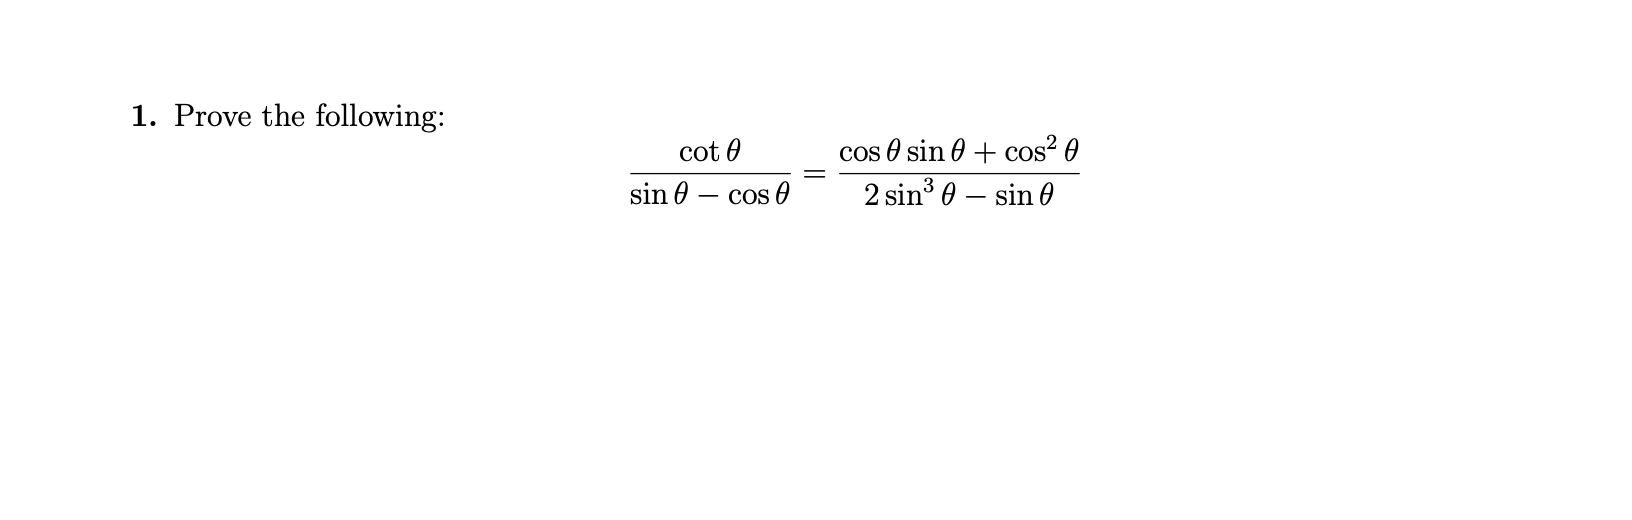 1. Prove the following:
cos O sin 0 + cos? 0
2 sin 0 – sin 0
cot 0
sin 0
Cos O
